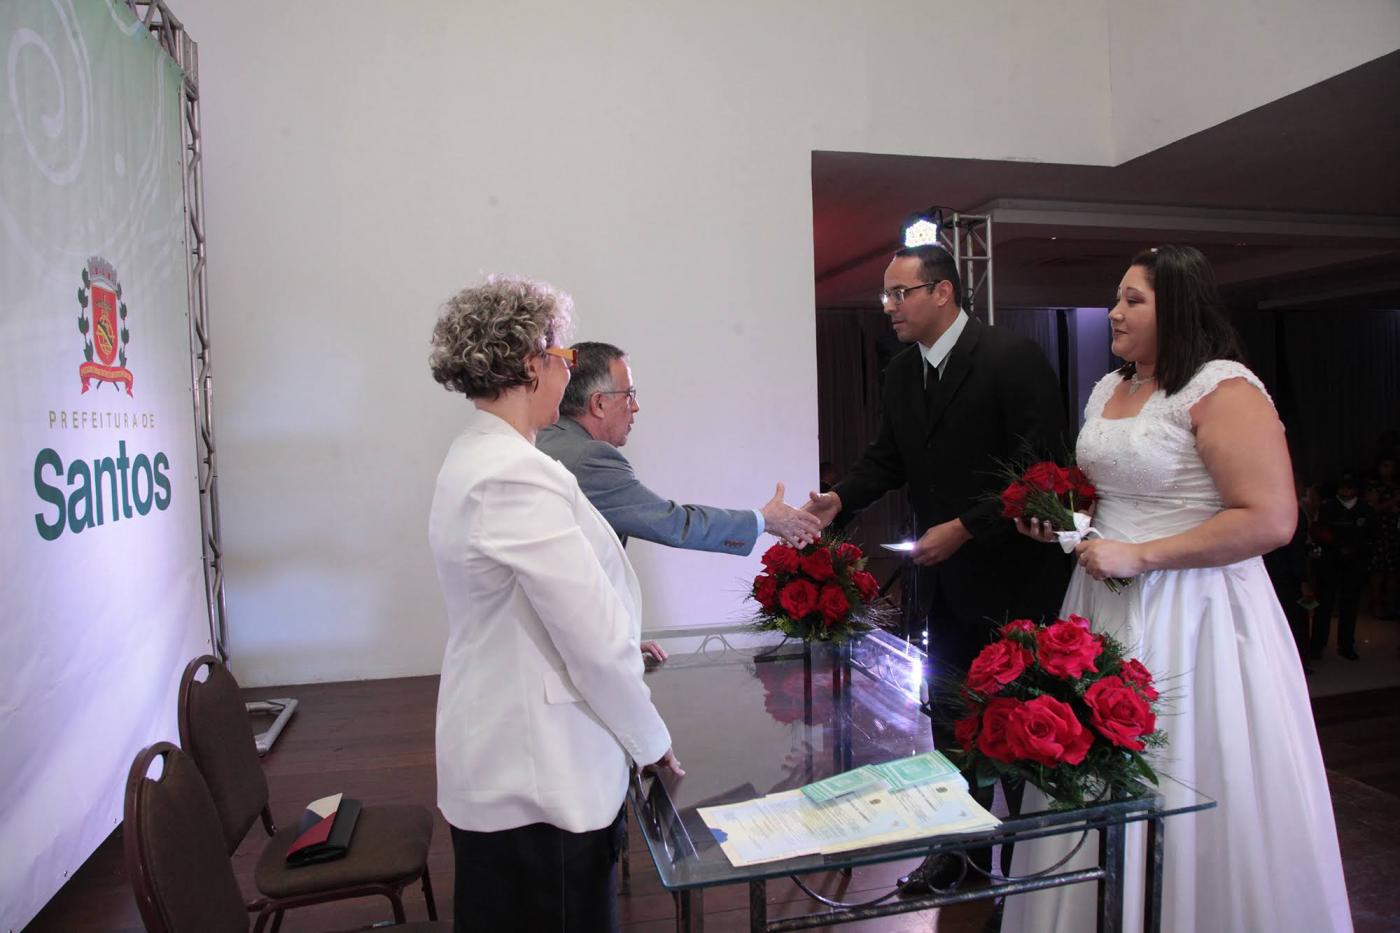 Casal de noivos, com as roupas tradicionais, está na frente de um casal atrás de uma mesa. Ao fundo um painel com o brasão de Santos. #Pracegover